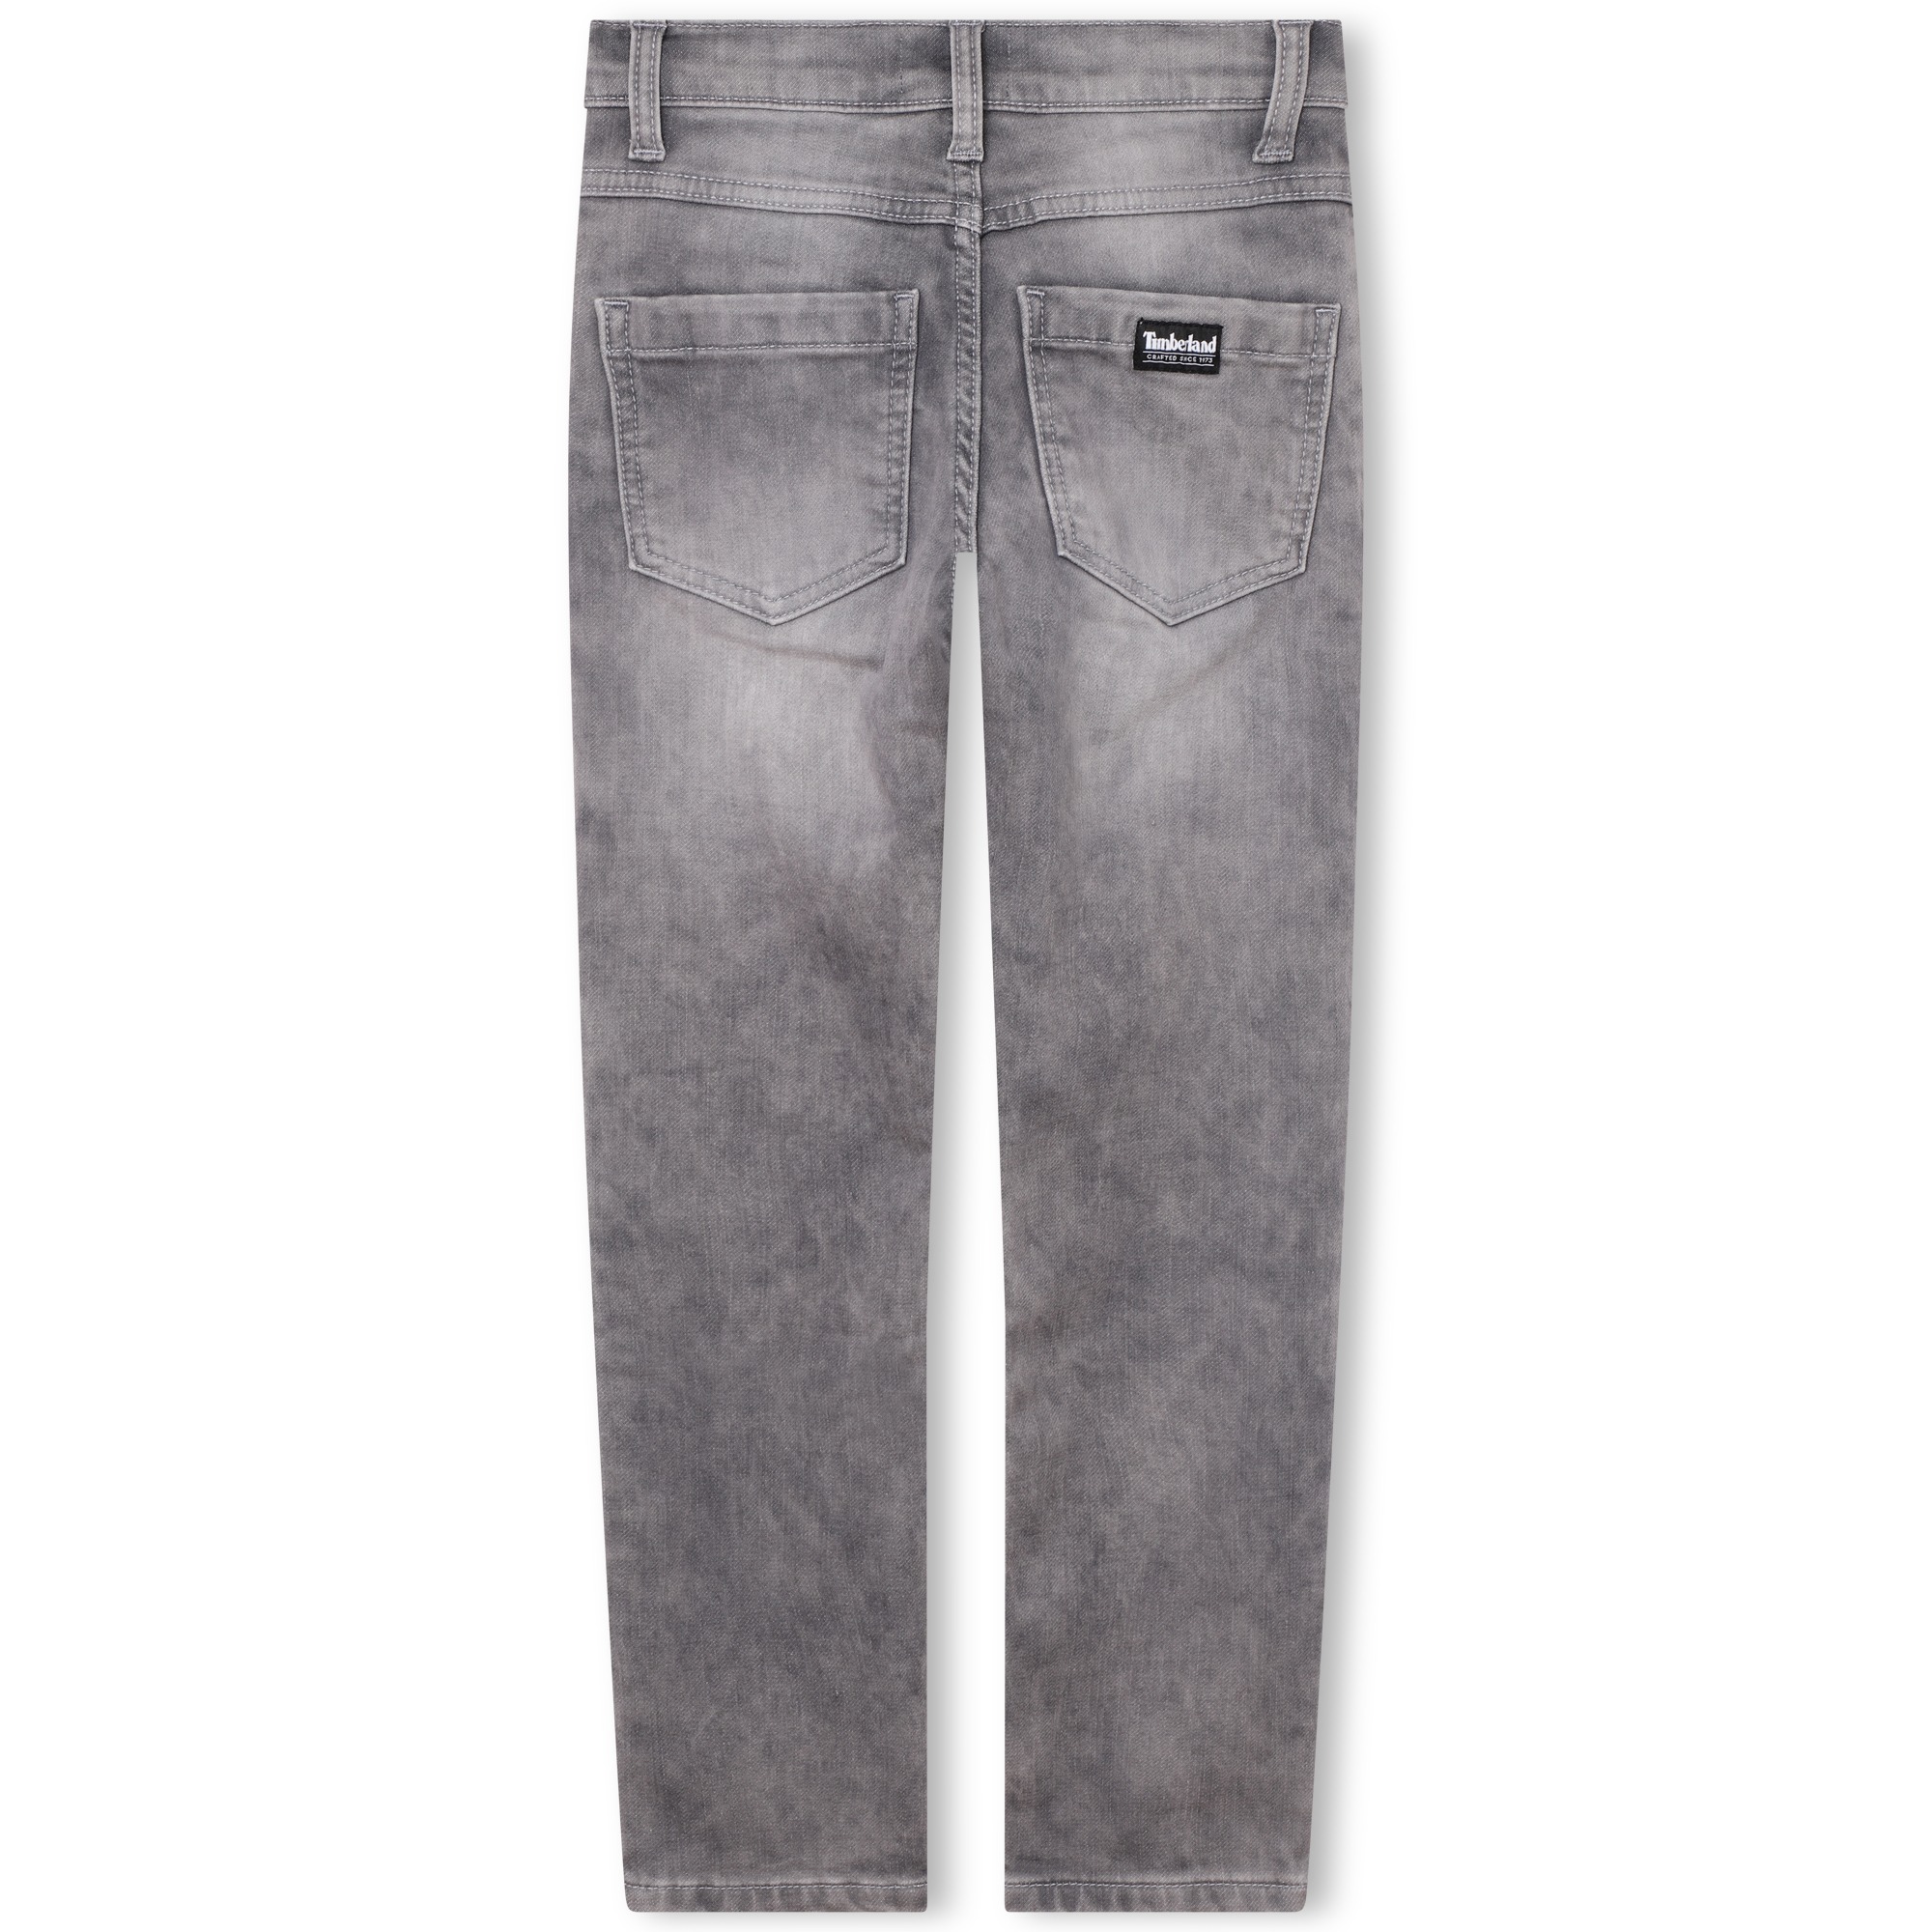 Jeans effetto consumato TIMBERLAND Per RAGAZZO